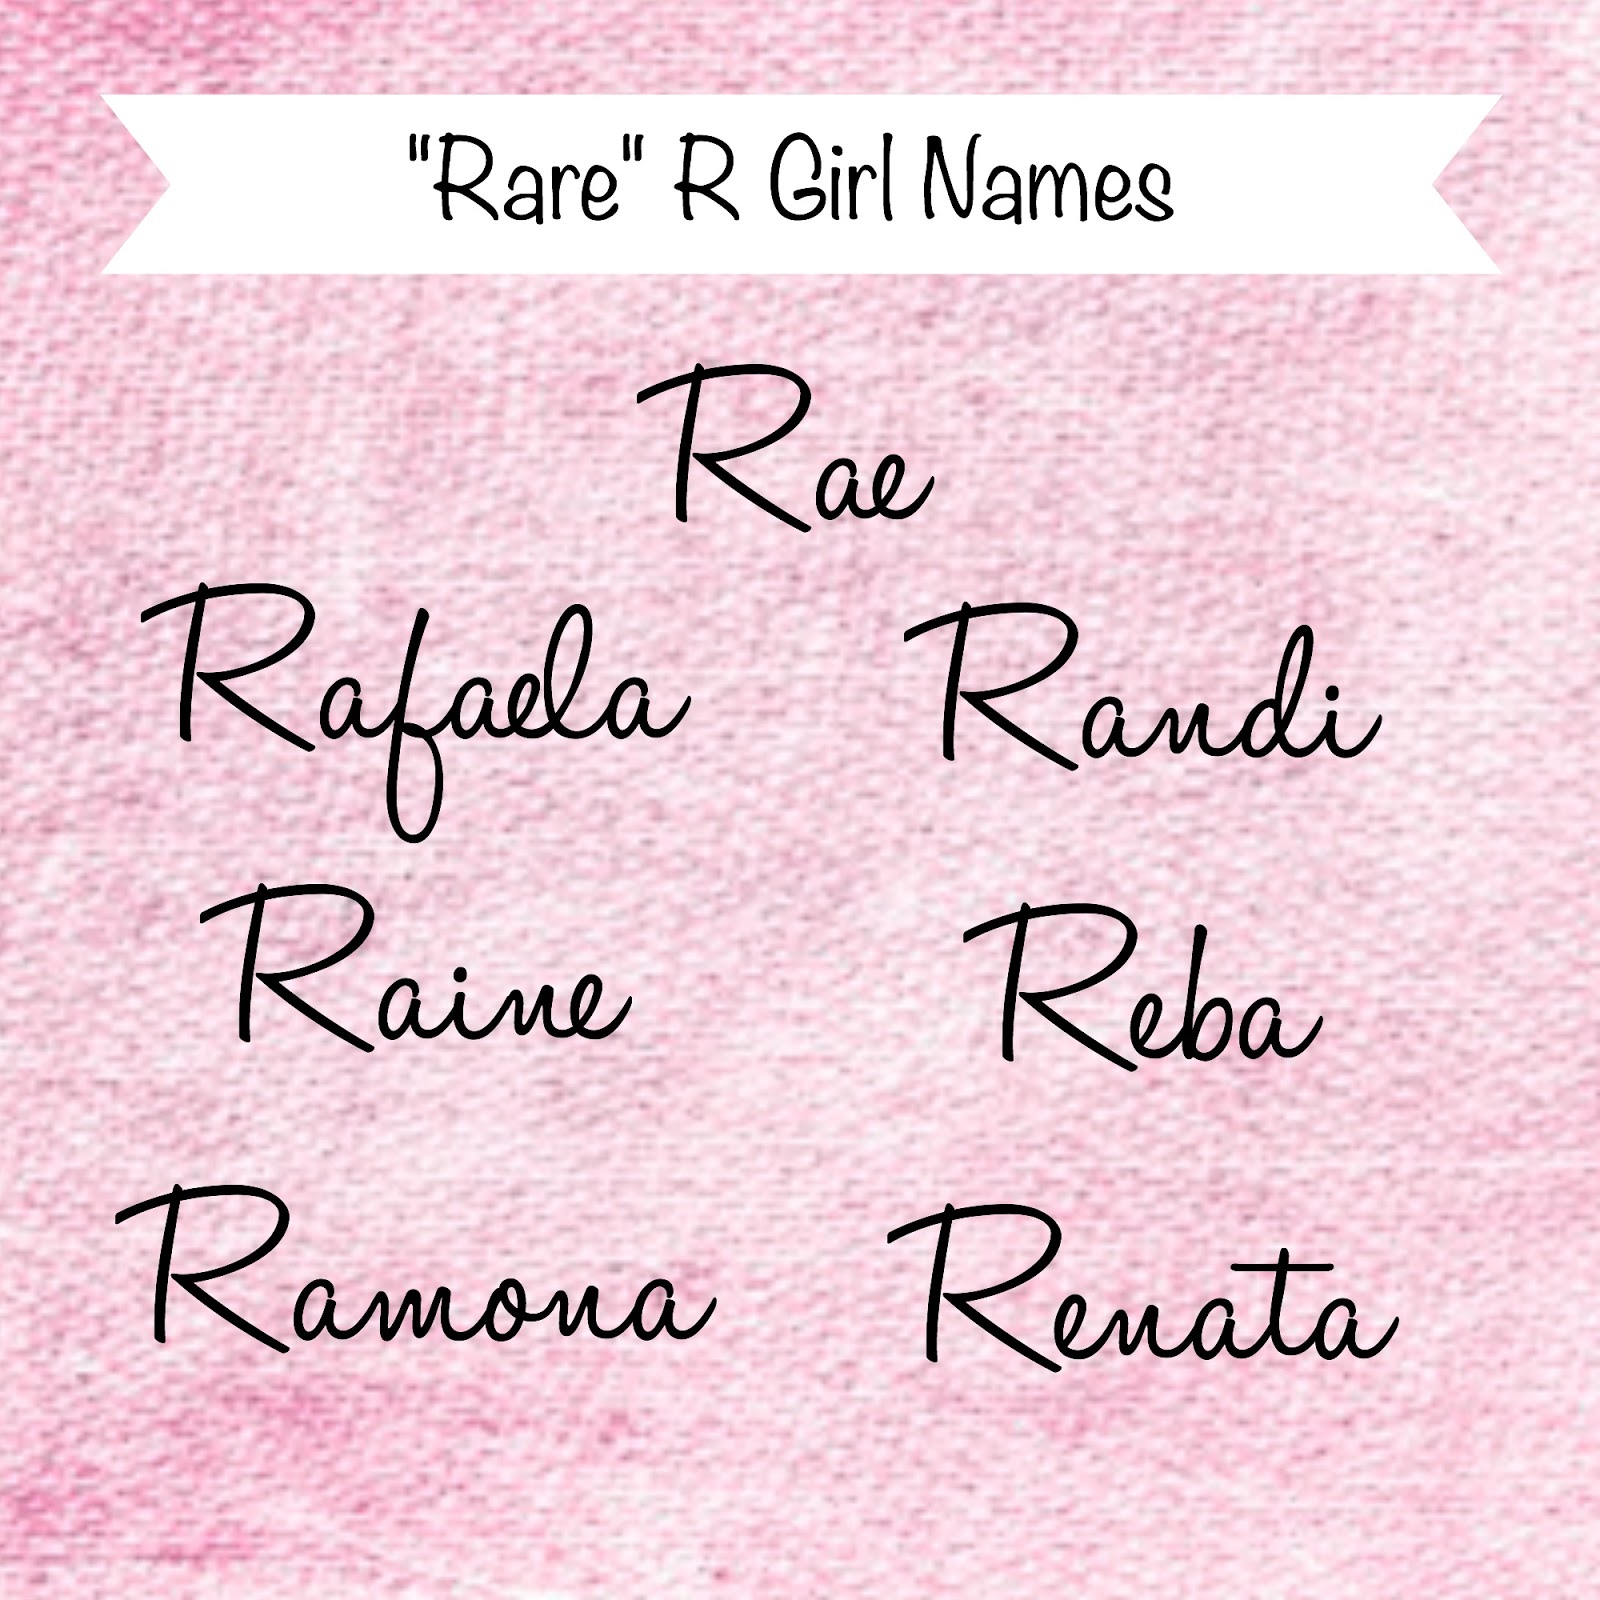 Ren's Baby Name Blog: "Rare" R Girl Names